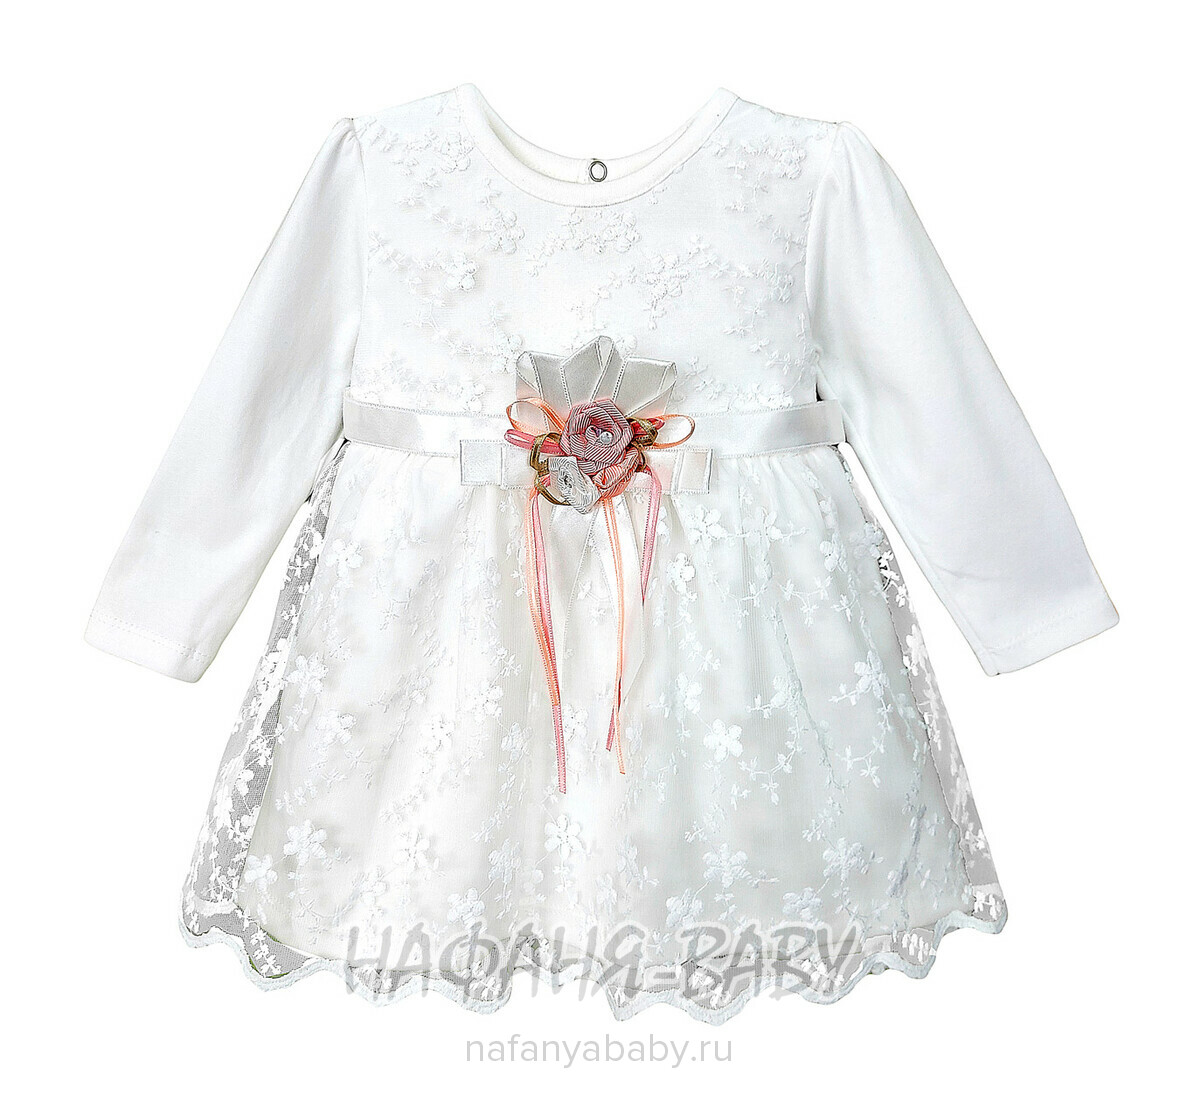 Детское нарядное платье BULSEN арт. 252, 9-18 мес, цвет молочный, оптом Турция